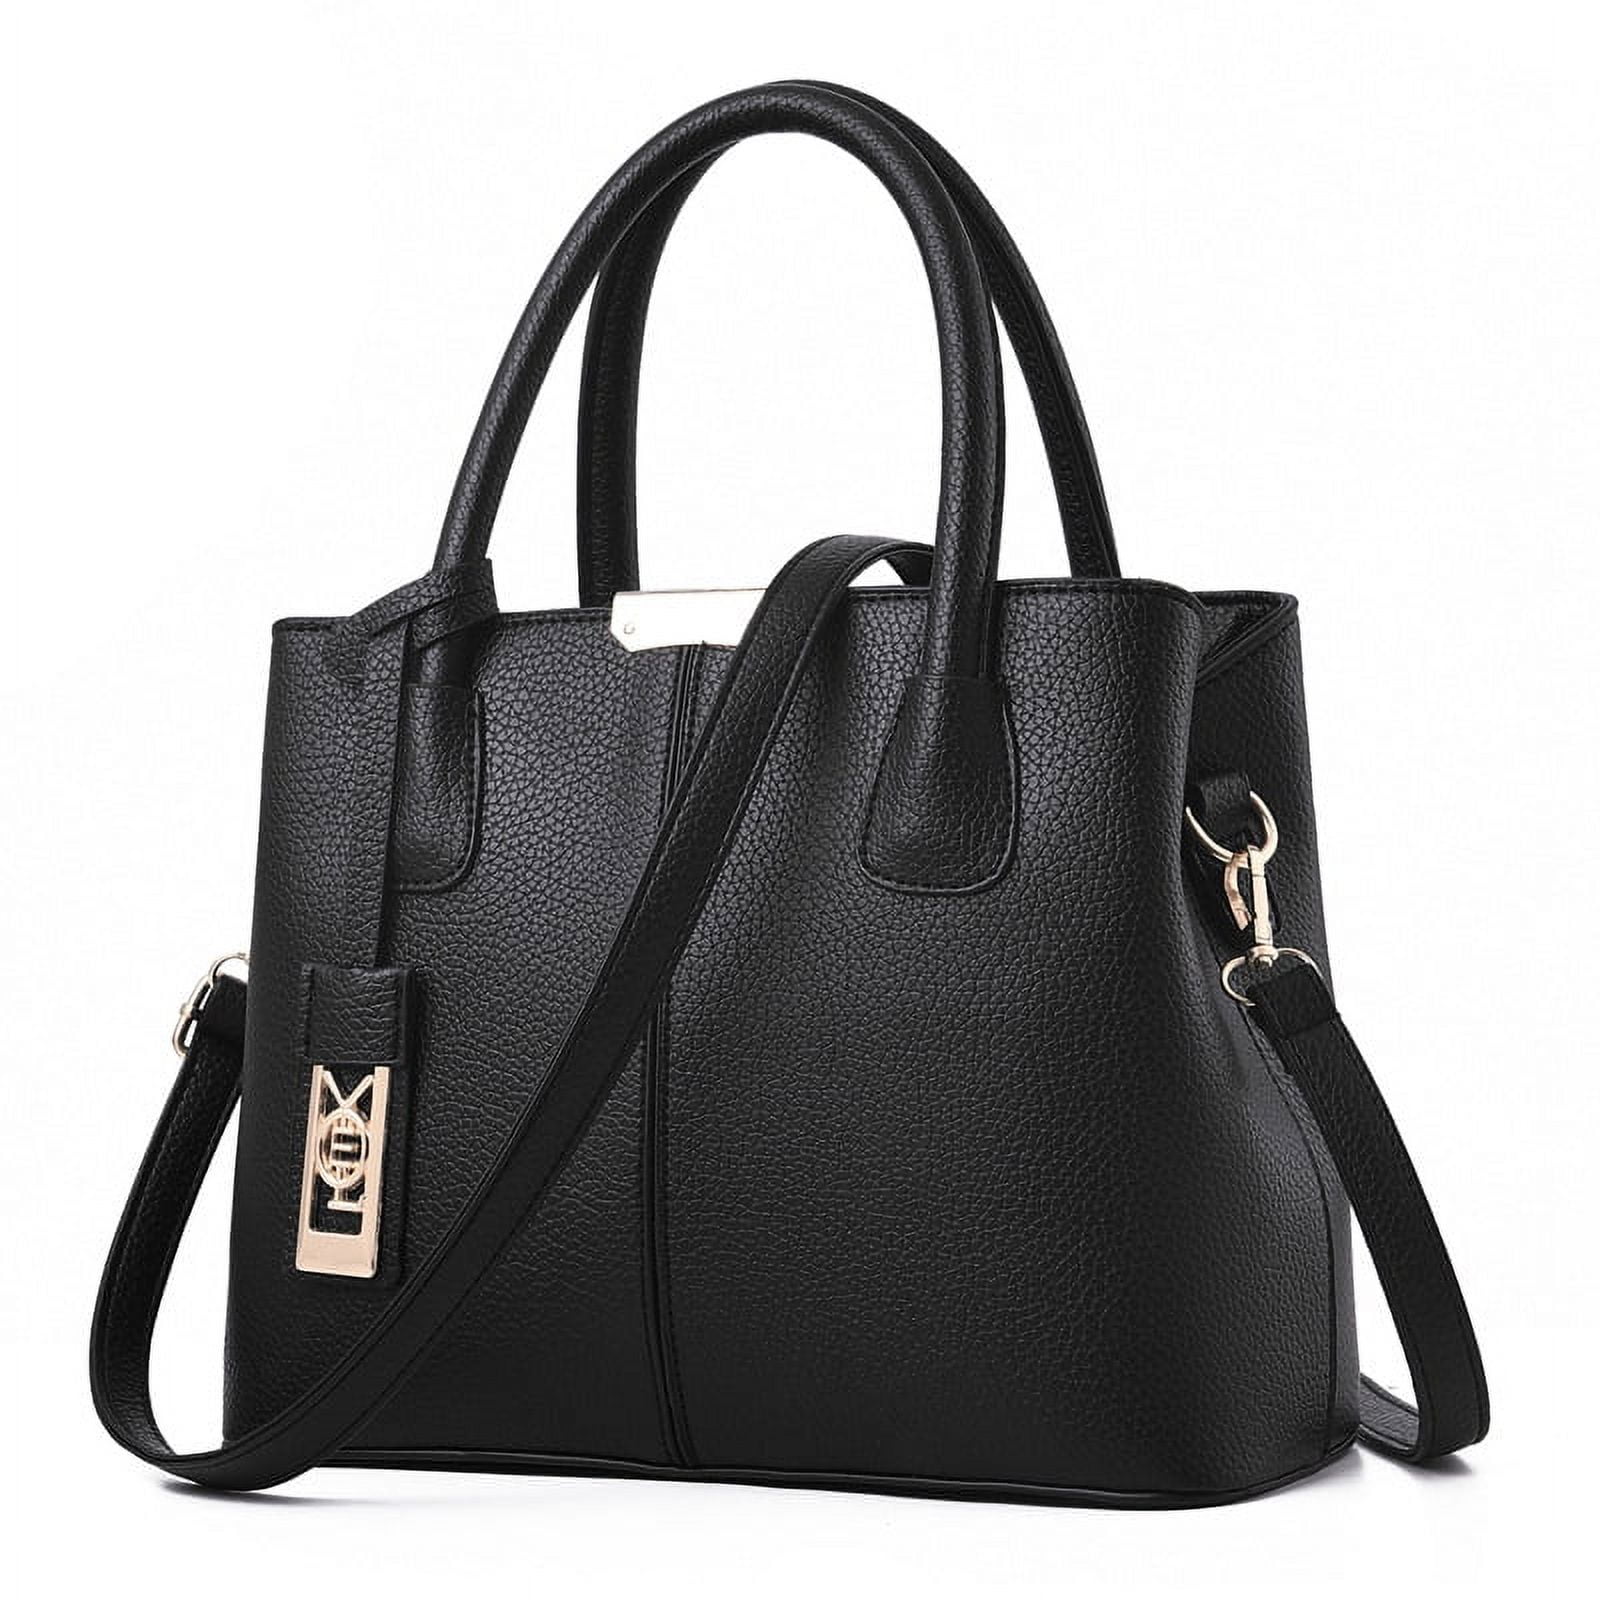 Leather Tote Bag for Women - Handbag with Shoulder, Black - Walmart.com